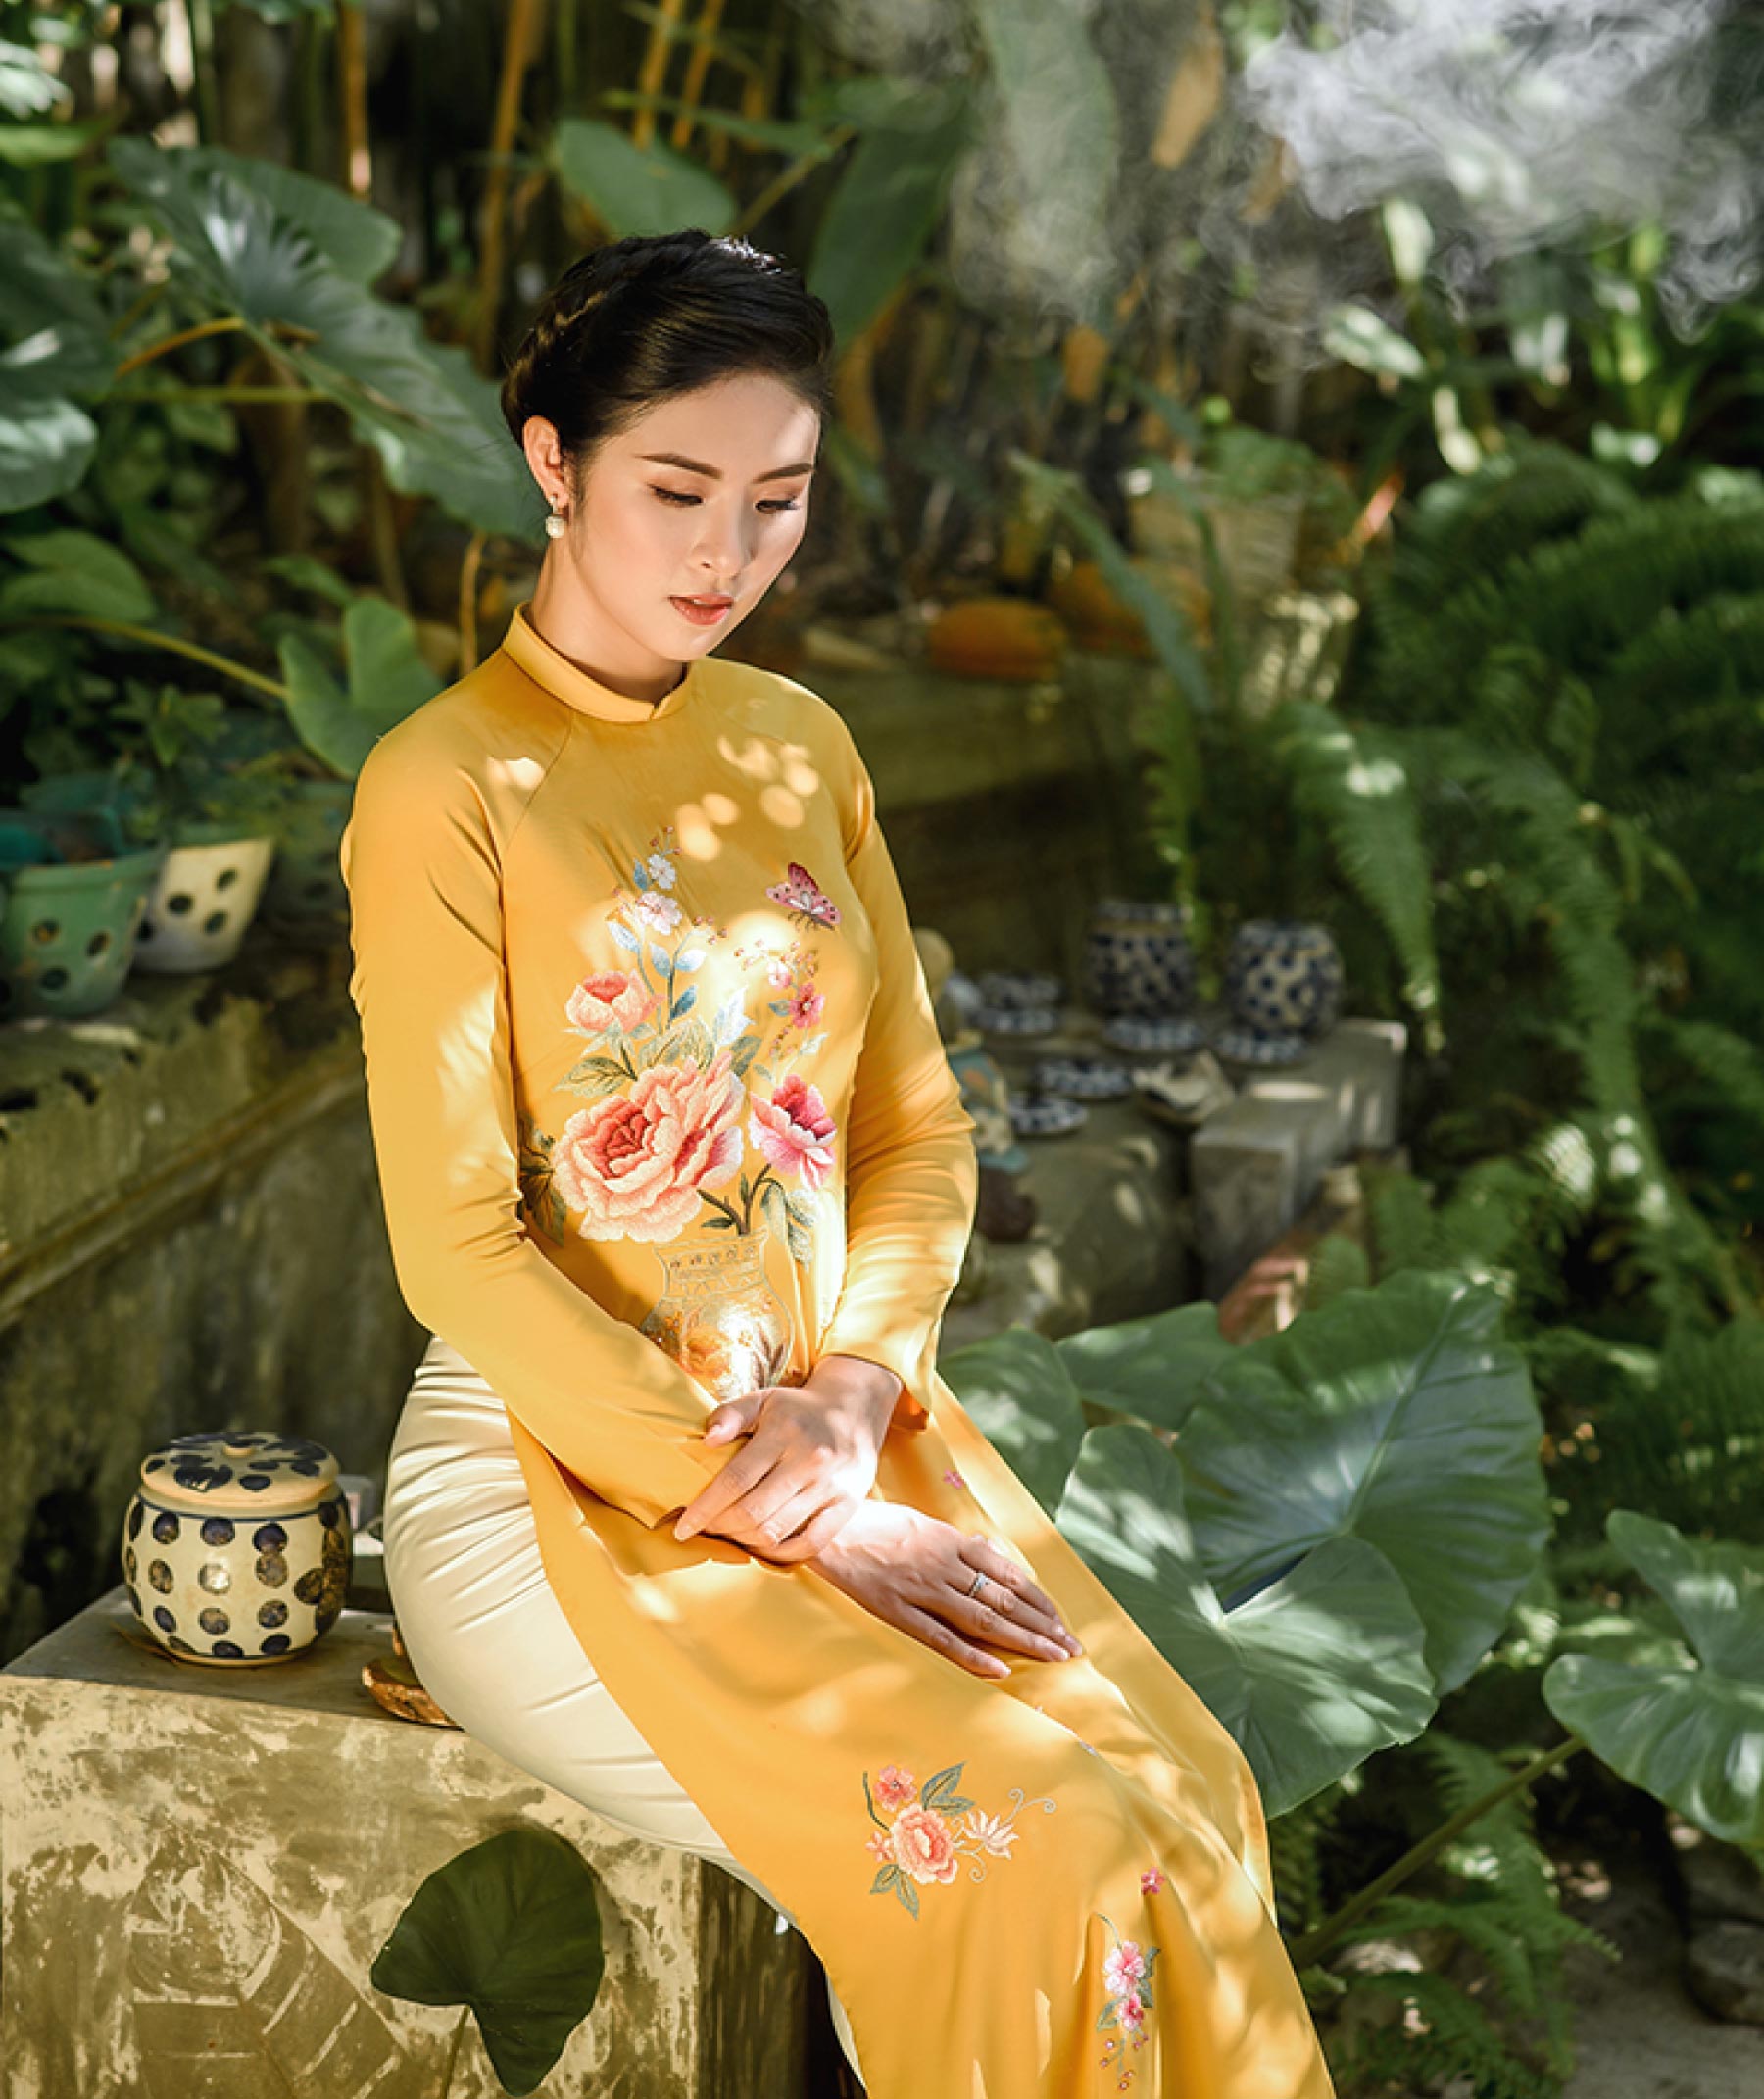 Trải qua nhiều thời kỳ, tà áo dài truyền thống Việt Nam tuy có nhiều sự biến đổi nhưng vẫn mang những ý nghĩa thuần túy, tôn vinh vẻ đẹp người phụ nữ Việt.